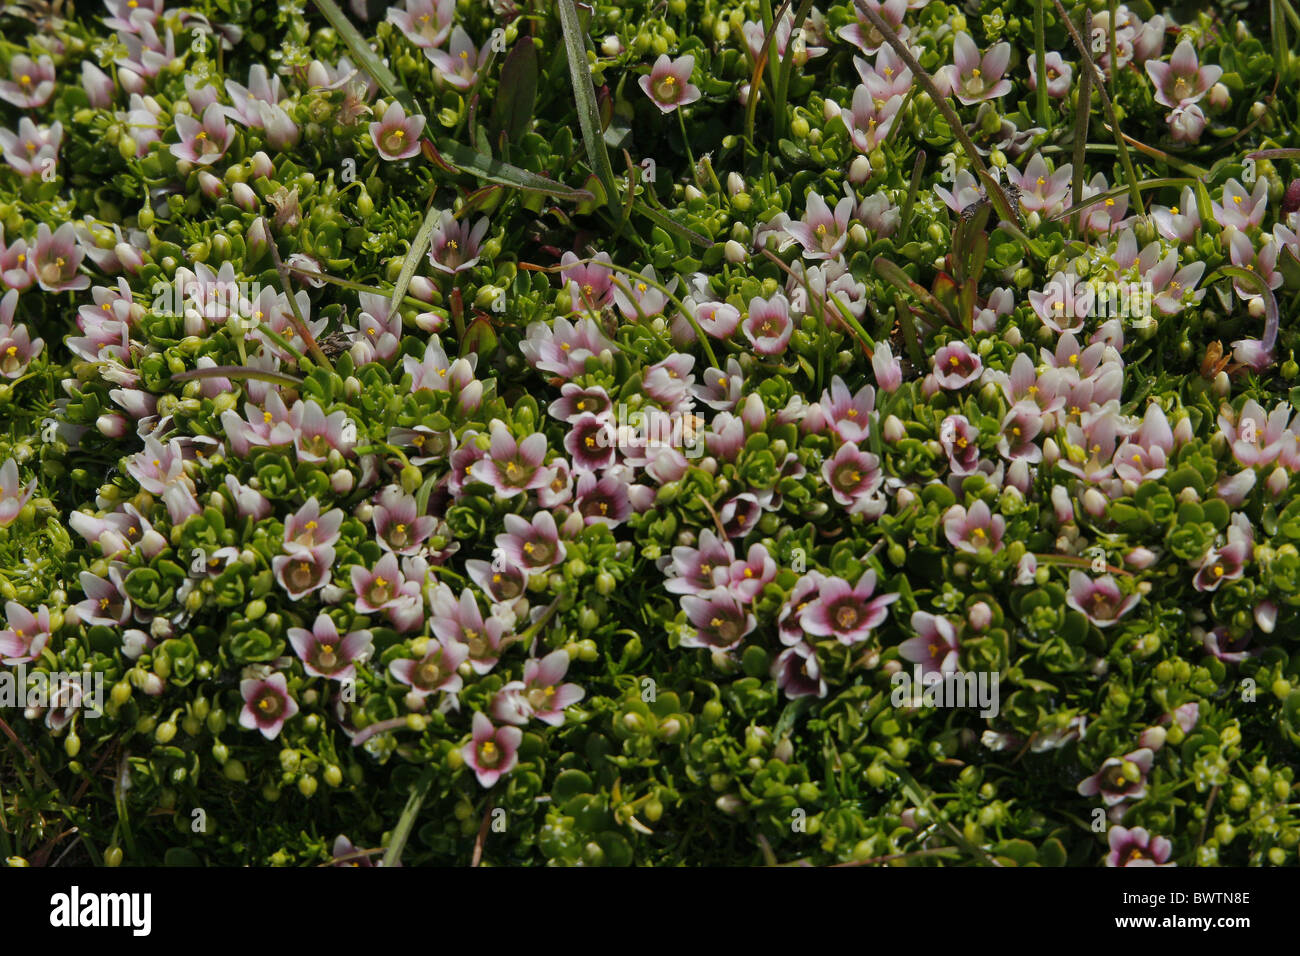 Pimpernel Anagallis alternifolia flowering Stock Photo